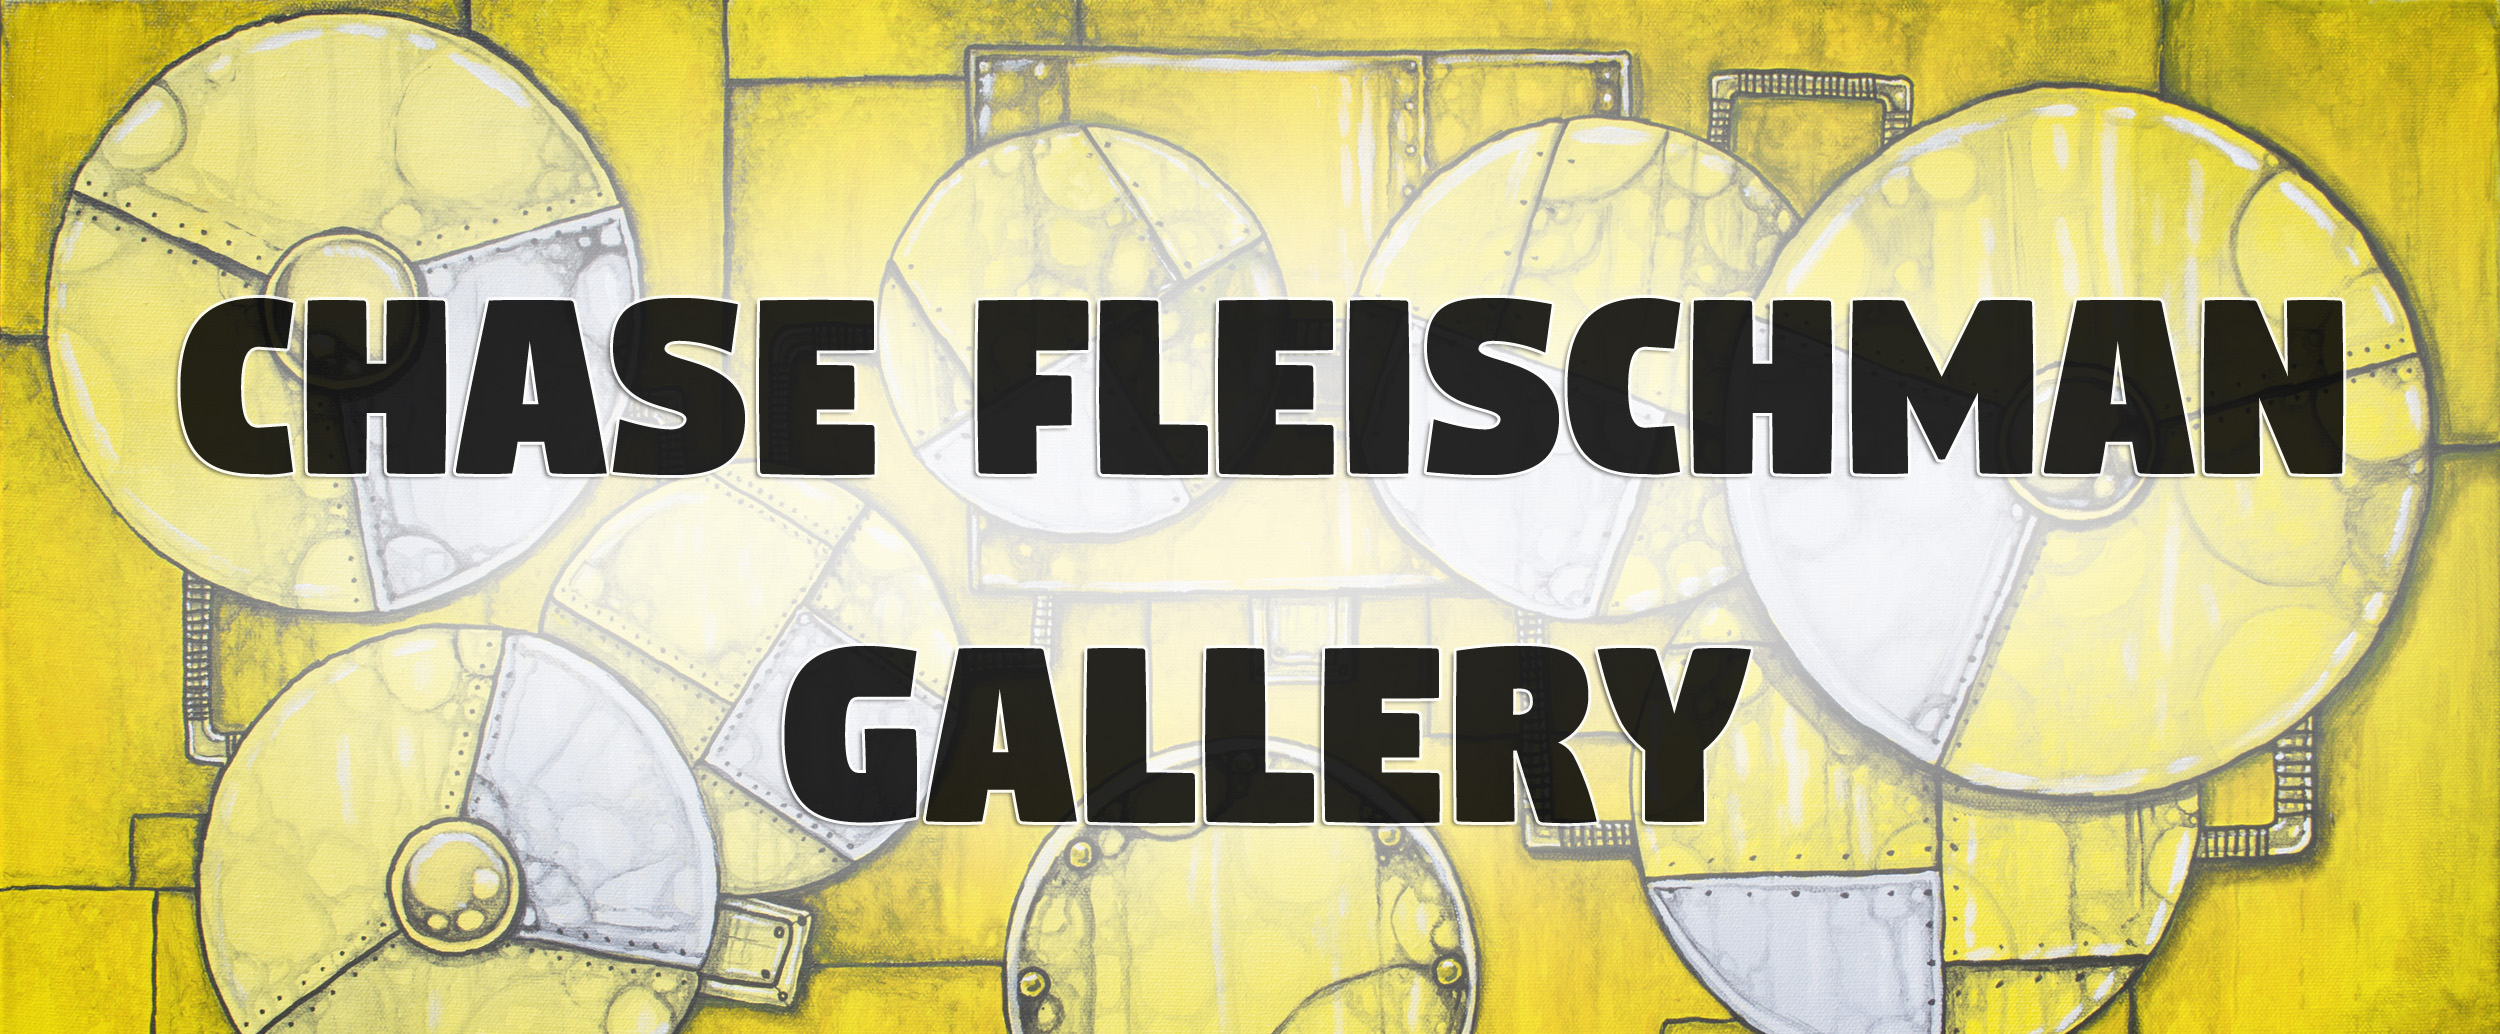 Chase Fleischman Gallery